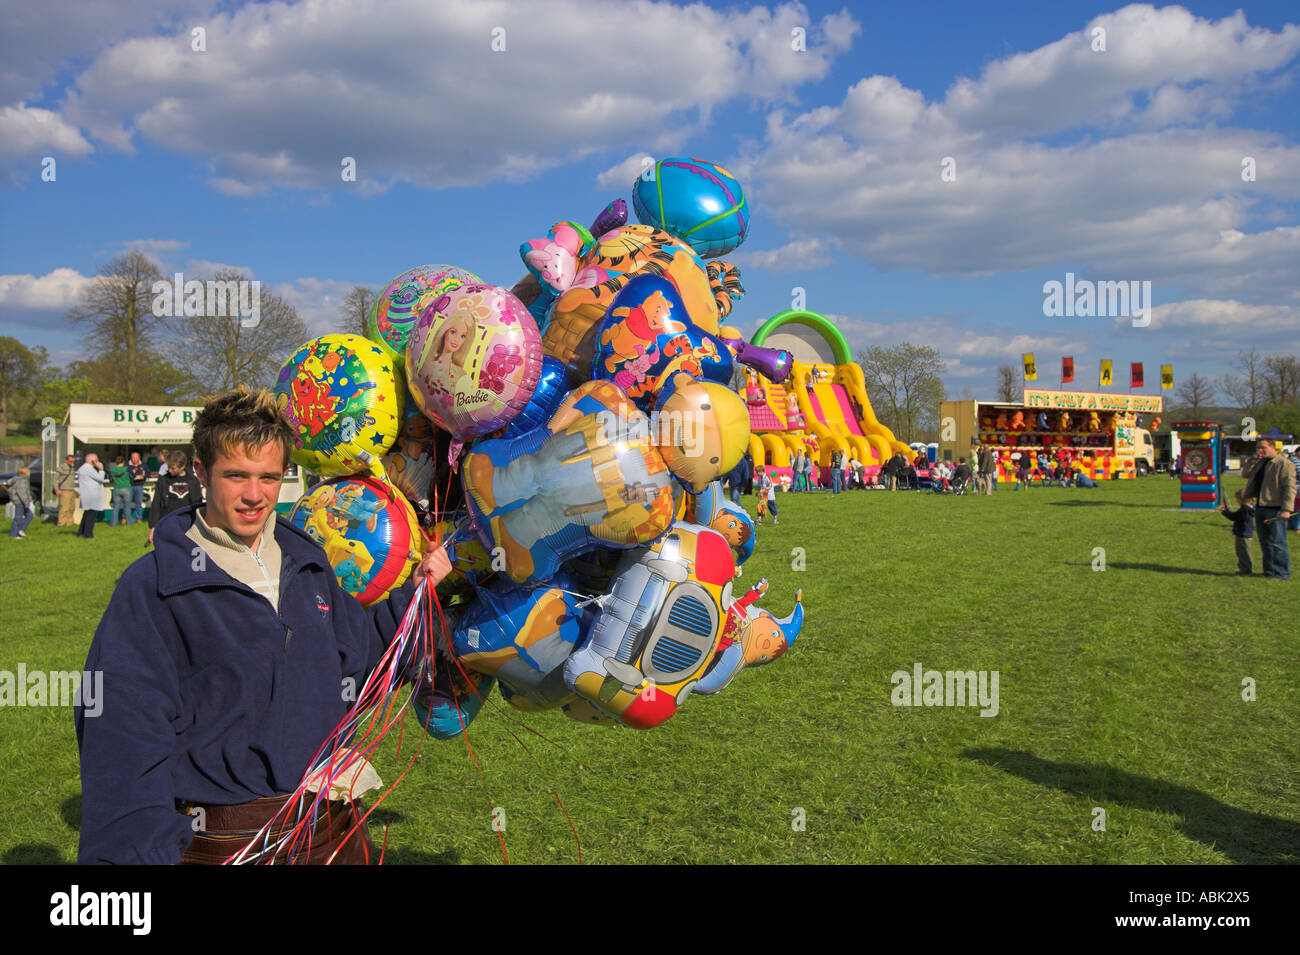 Smiling Balloon salesman at fairground Stock Photo